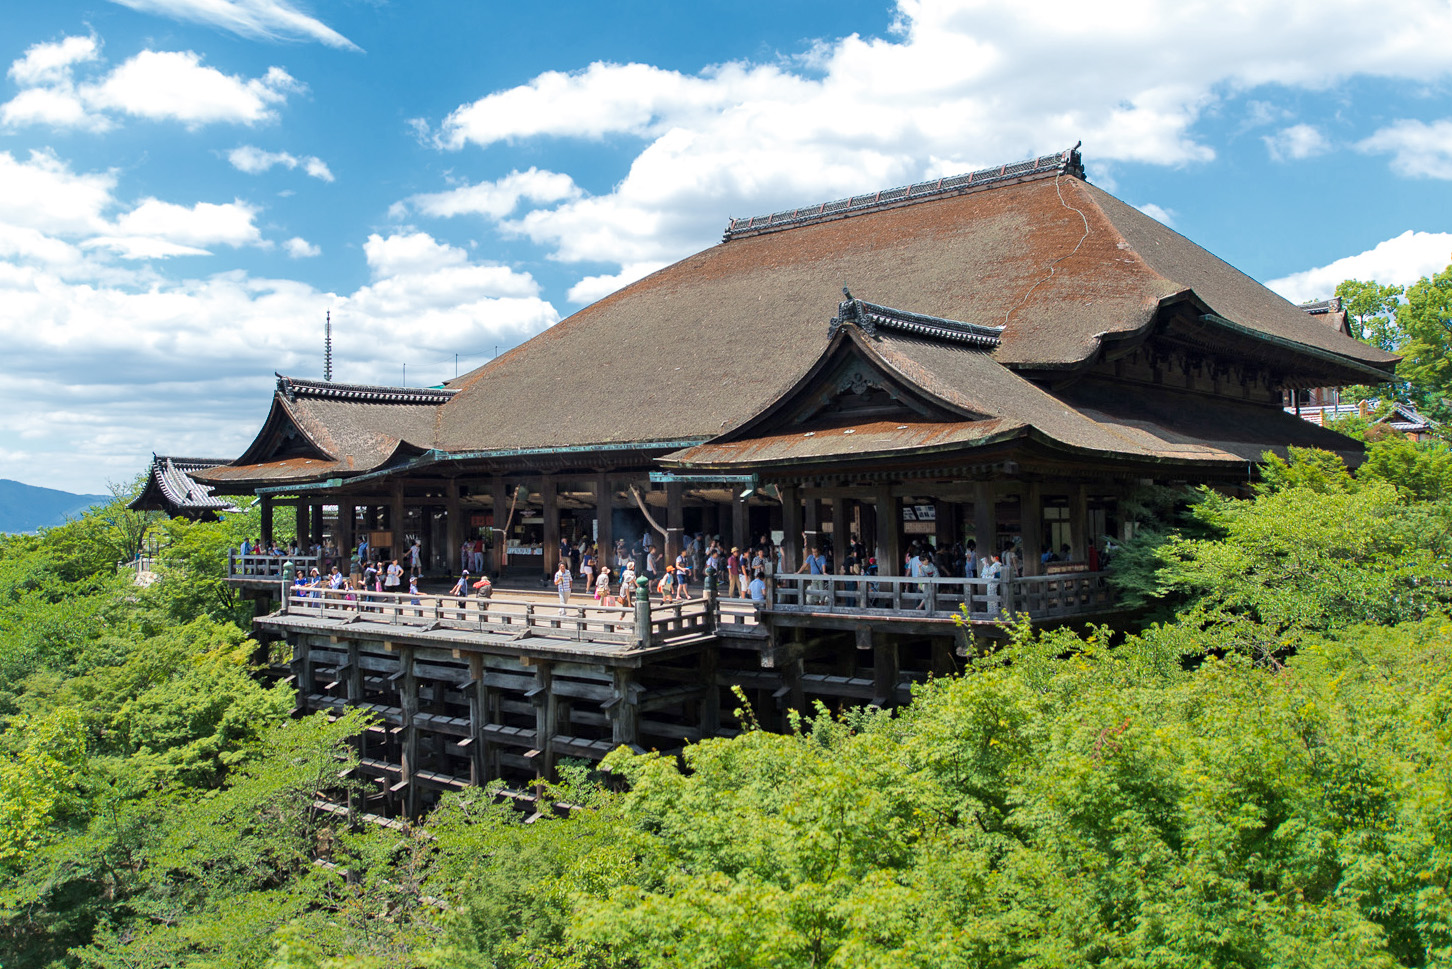 Ngôi chùa cổ nổi tiếng ở Nhật Bản - Kiyomizu